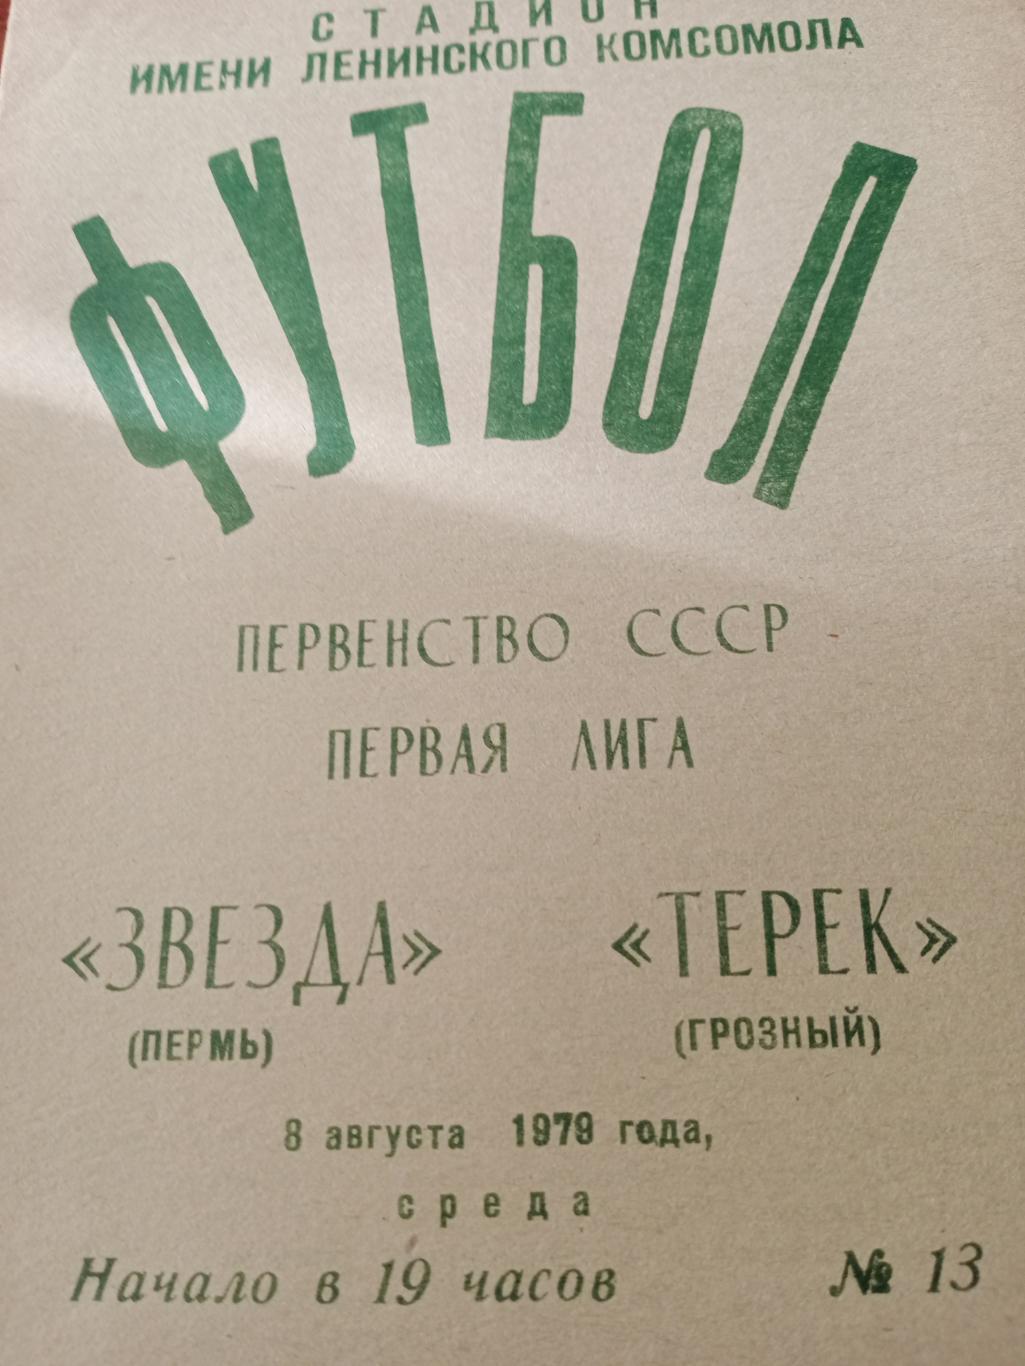 Звезда Пермь - Терек Грозный -8.08.79